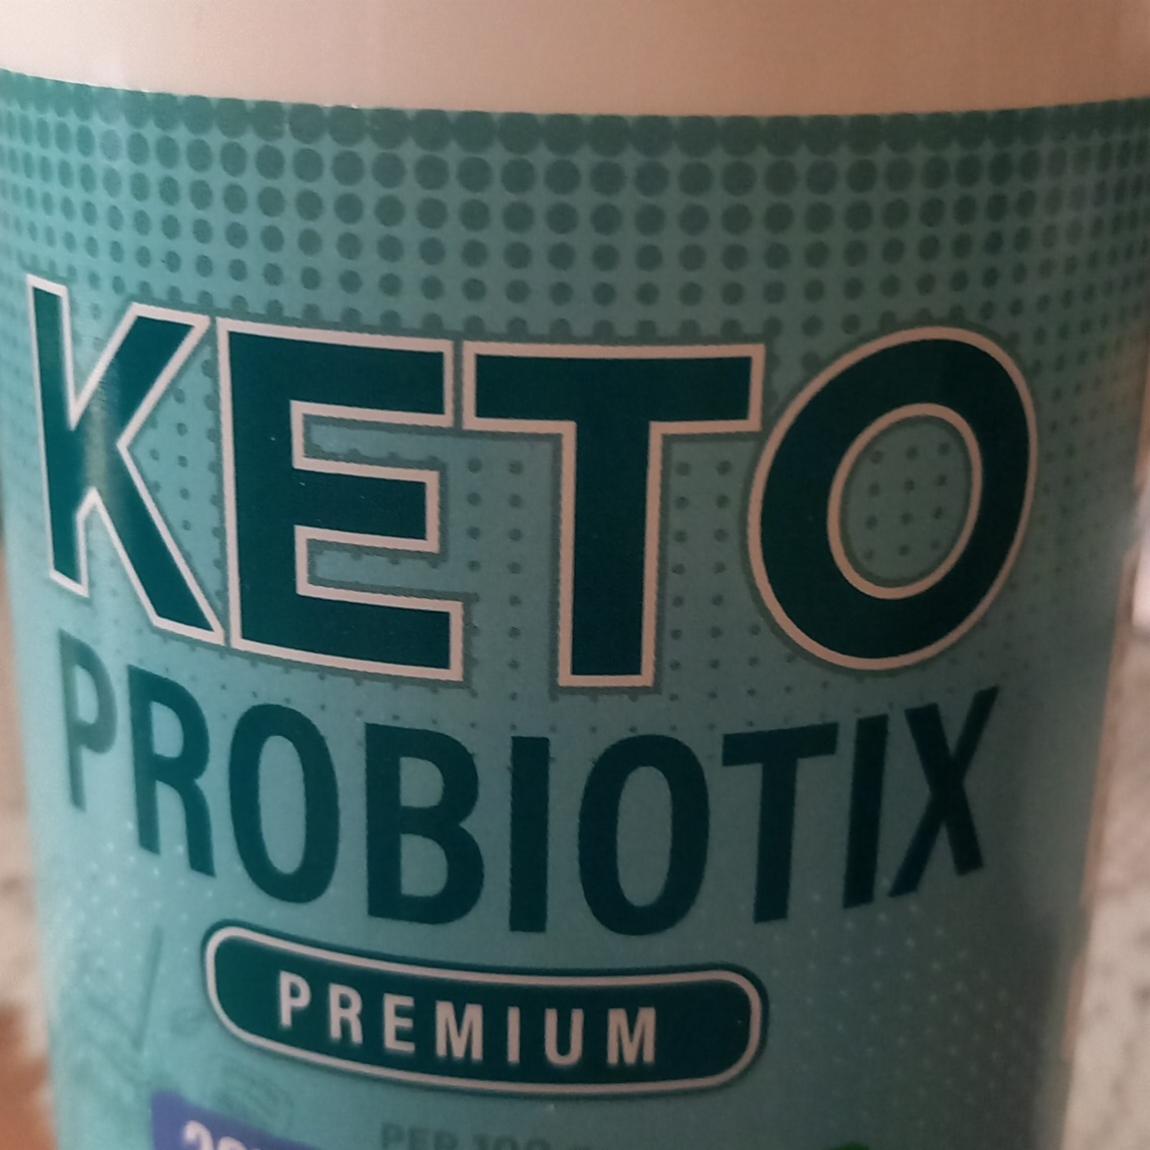 Fotografie - Keto Probiotix Premium